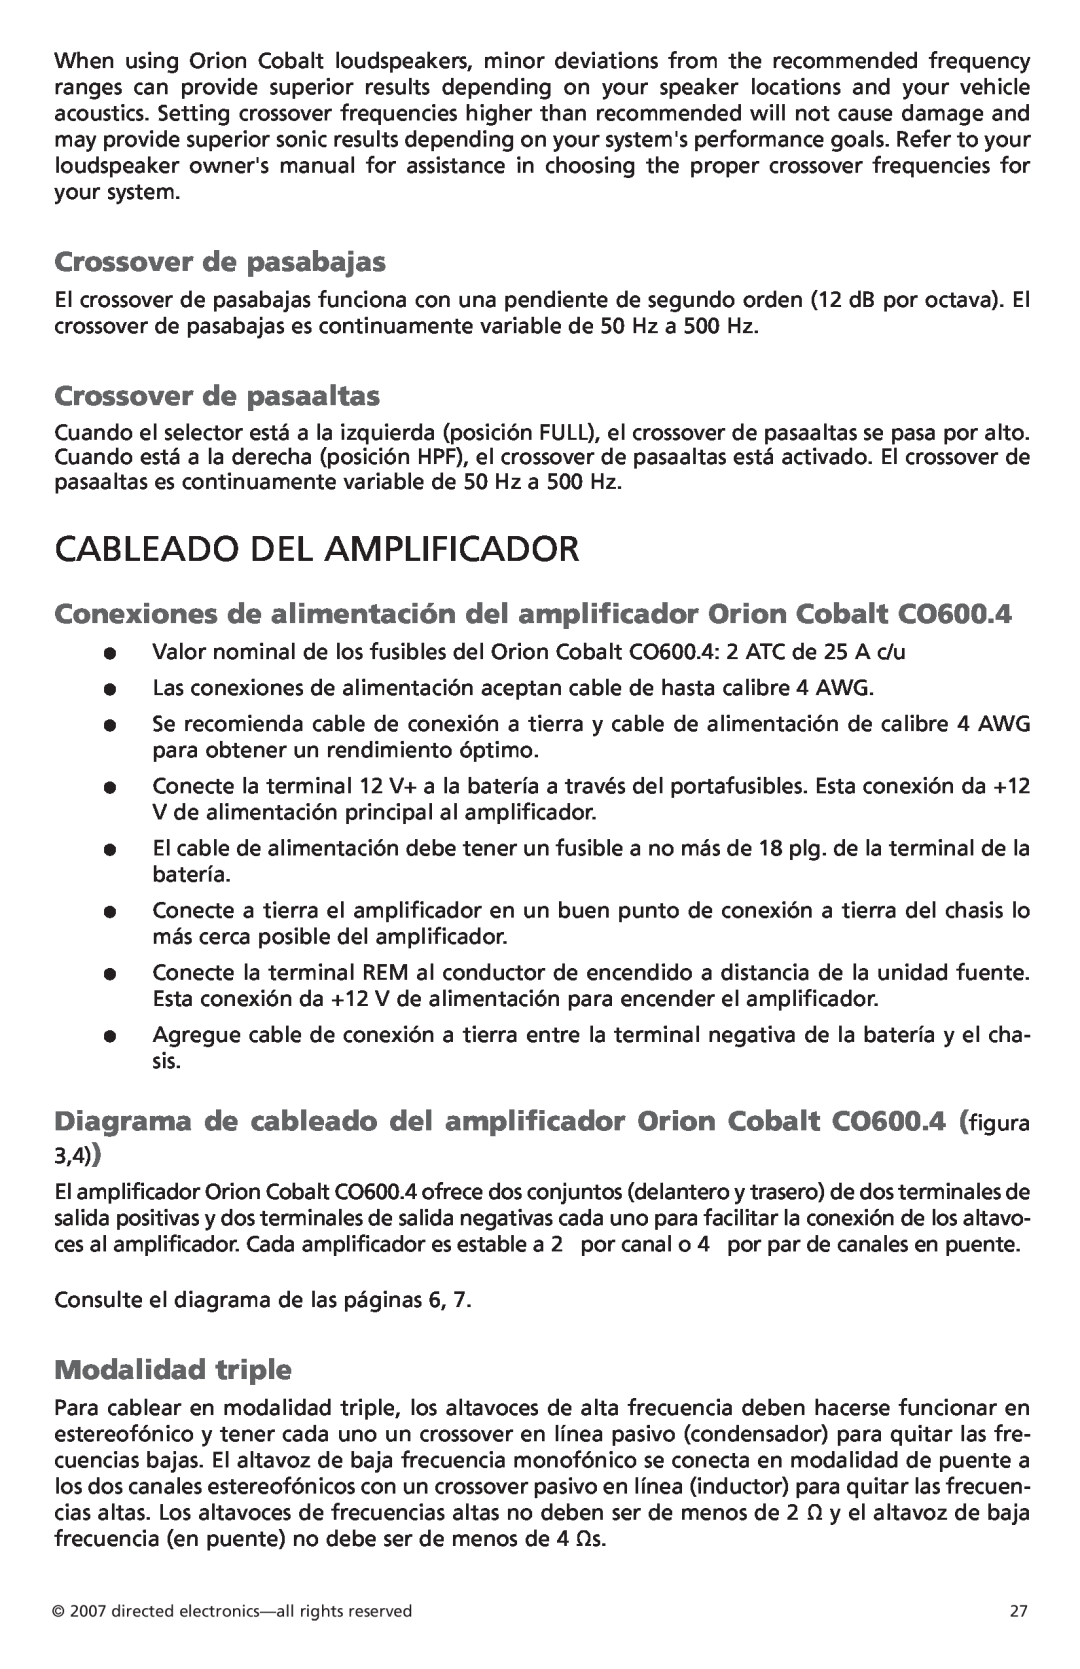 Orion G42110 owner manual Cableado del amplificador, Crossover de pasabajas, Crossover de pasaaltas, Modalidad triple 